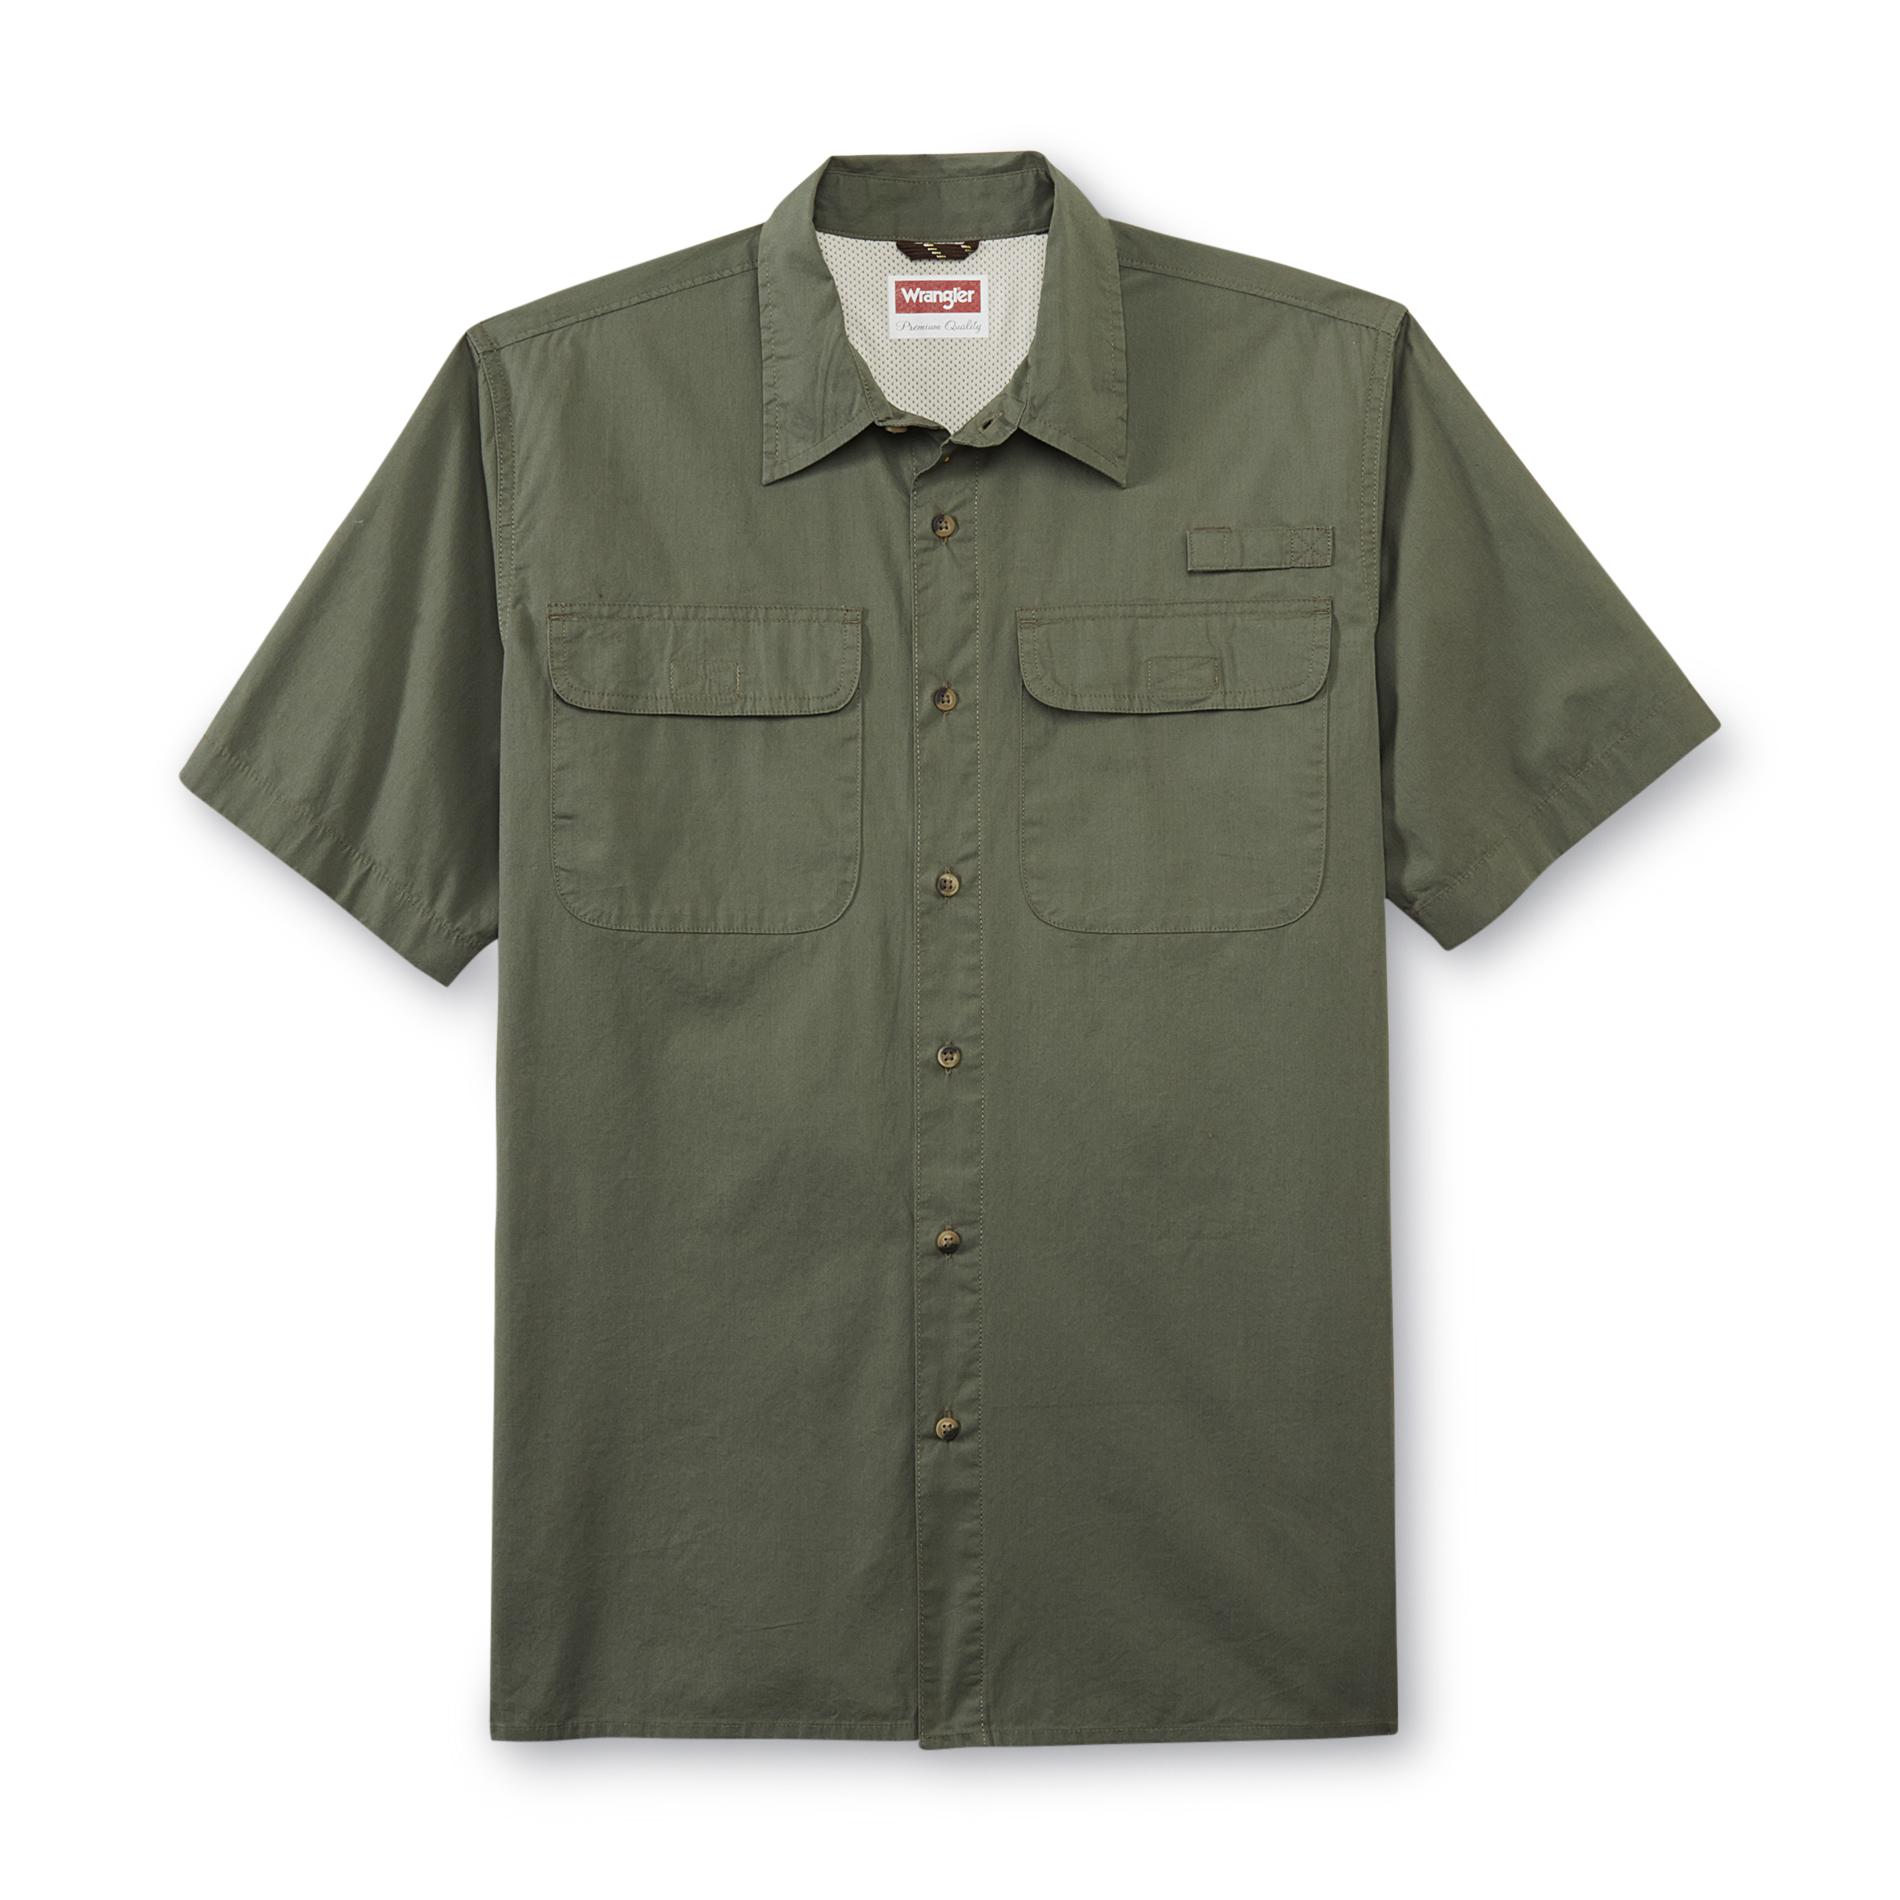 Wrangler Men's Short-Sleeve Utility Shirt